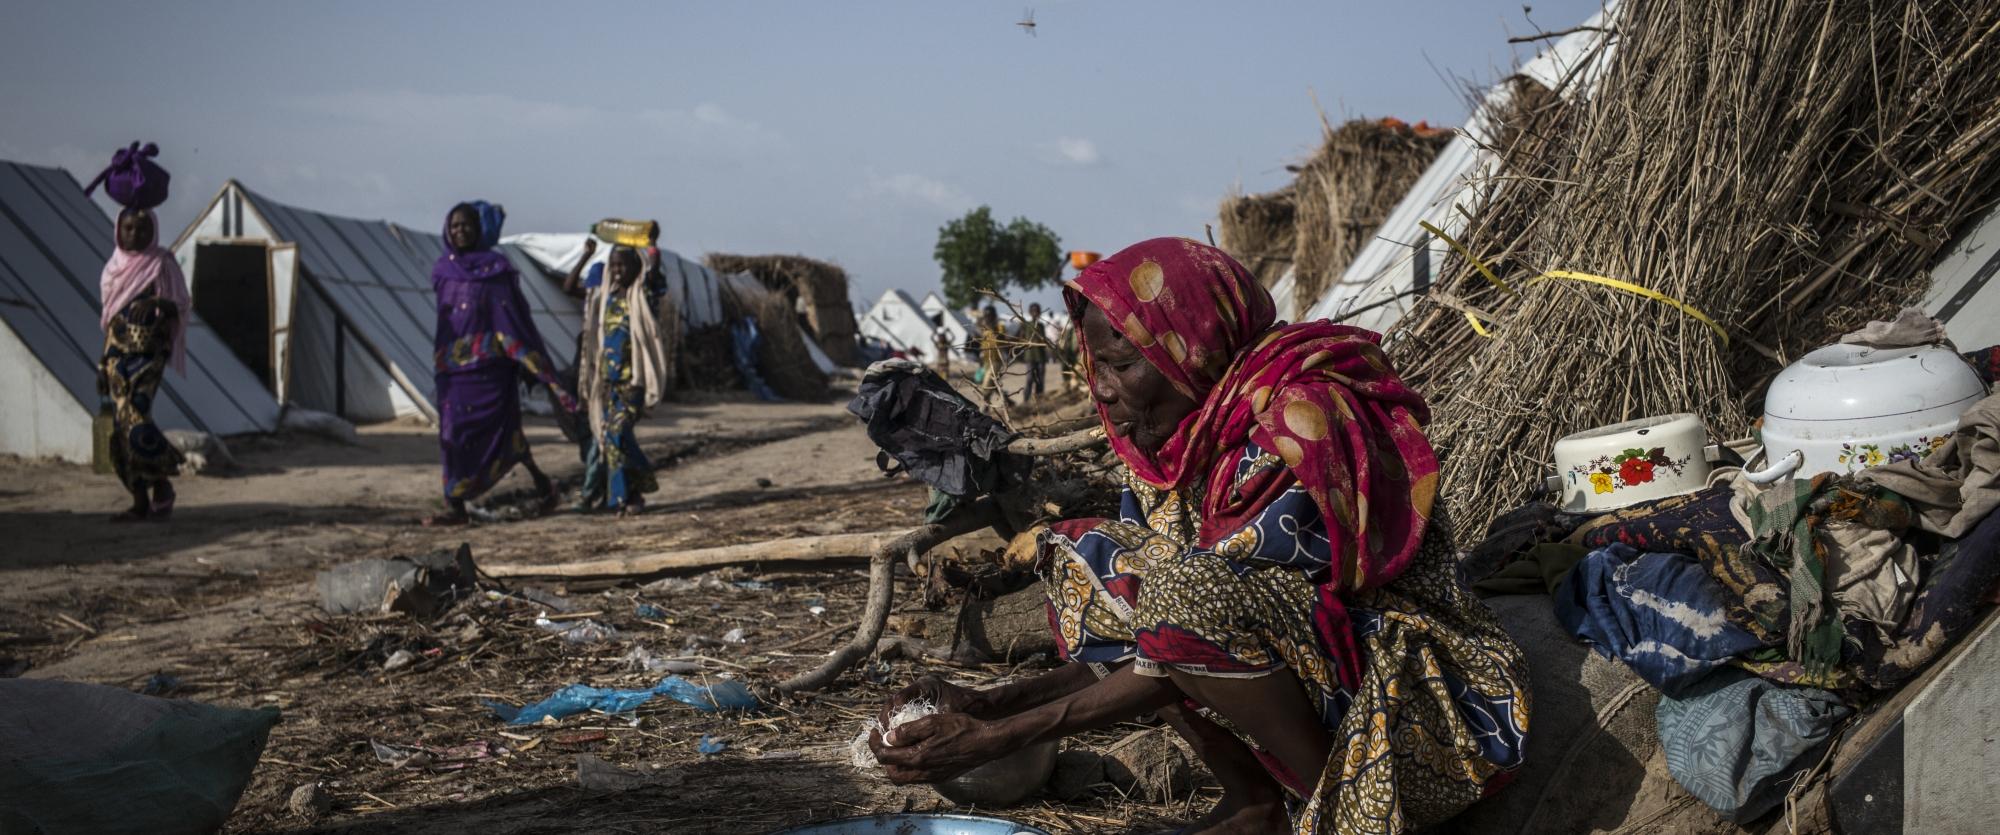 Scène de vie quotidienne dans le camp de réfugiés de Rann, dans l’Etat de Borno, dans le nord-ouest du Nigeria, en juillet 2017.